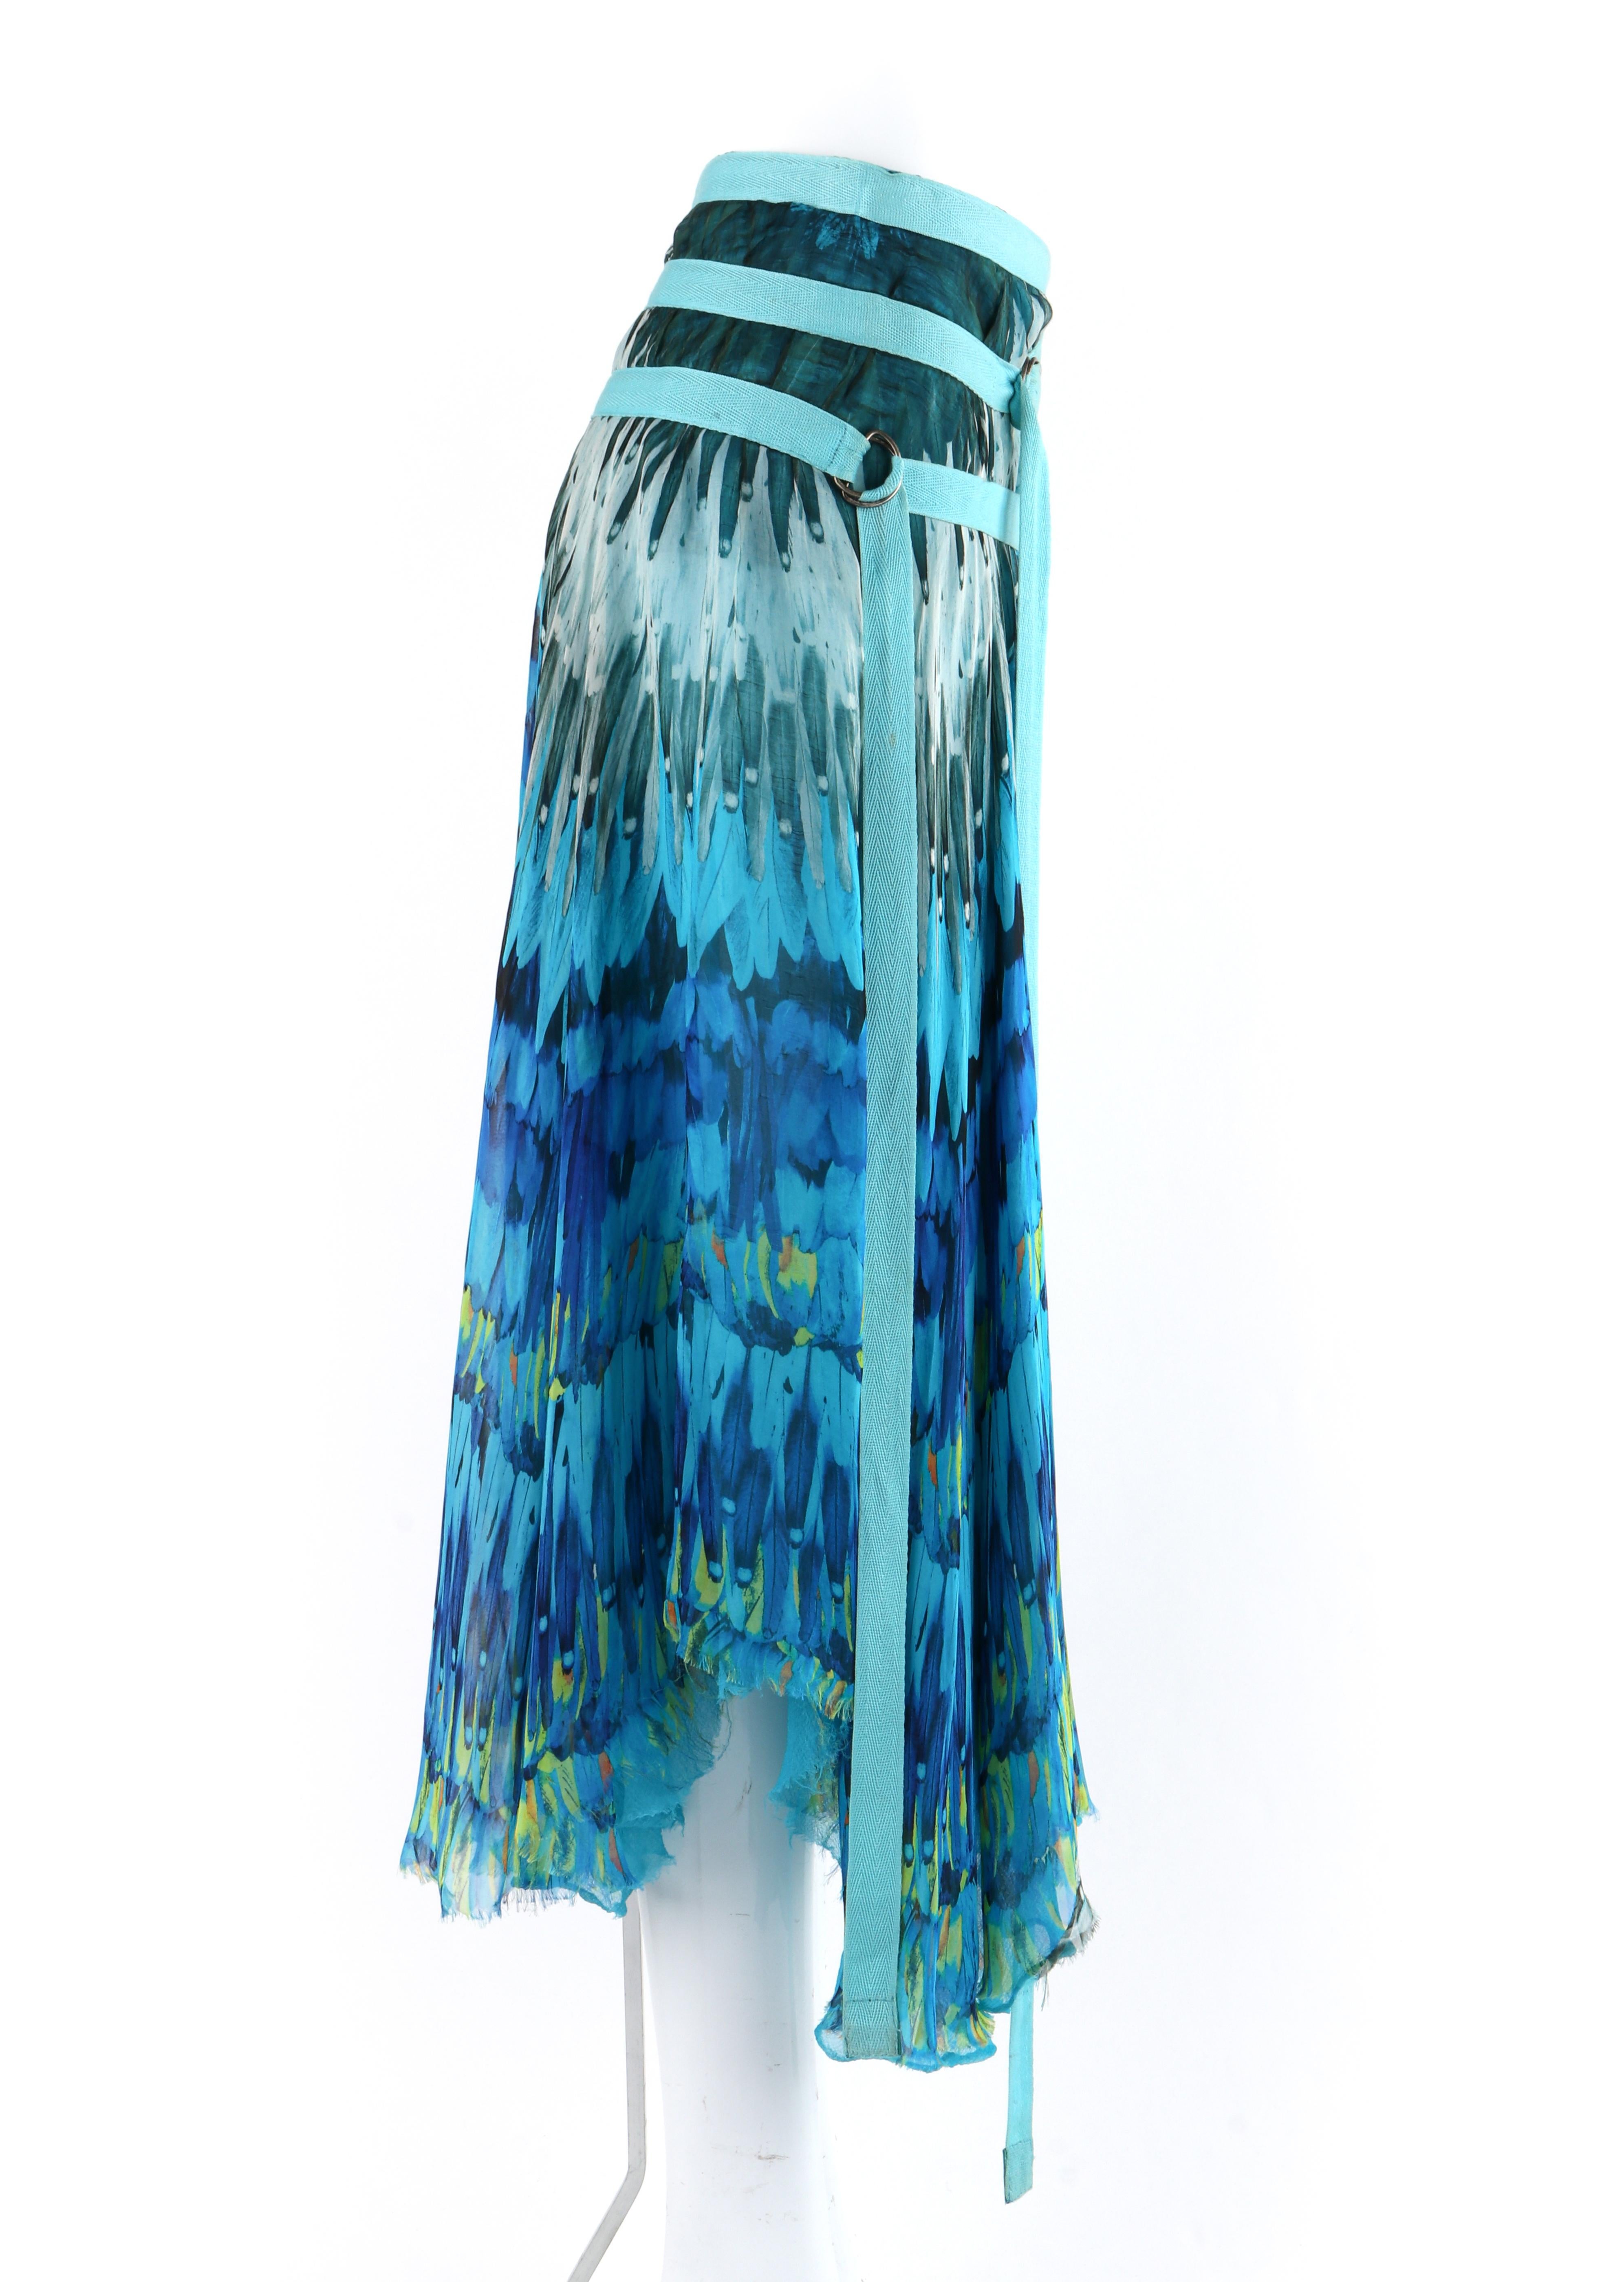 ALEXANDER McQUEEN S/S 2003 “Irere” Blue Feather Silk Handkerchief Hem Midi Skirt 1